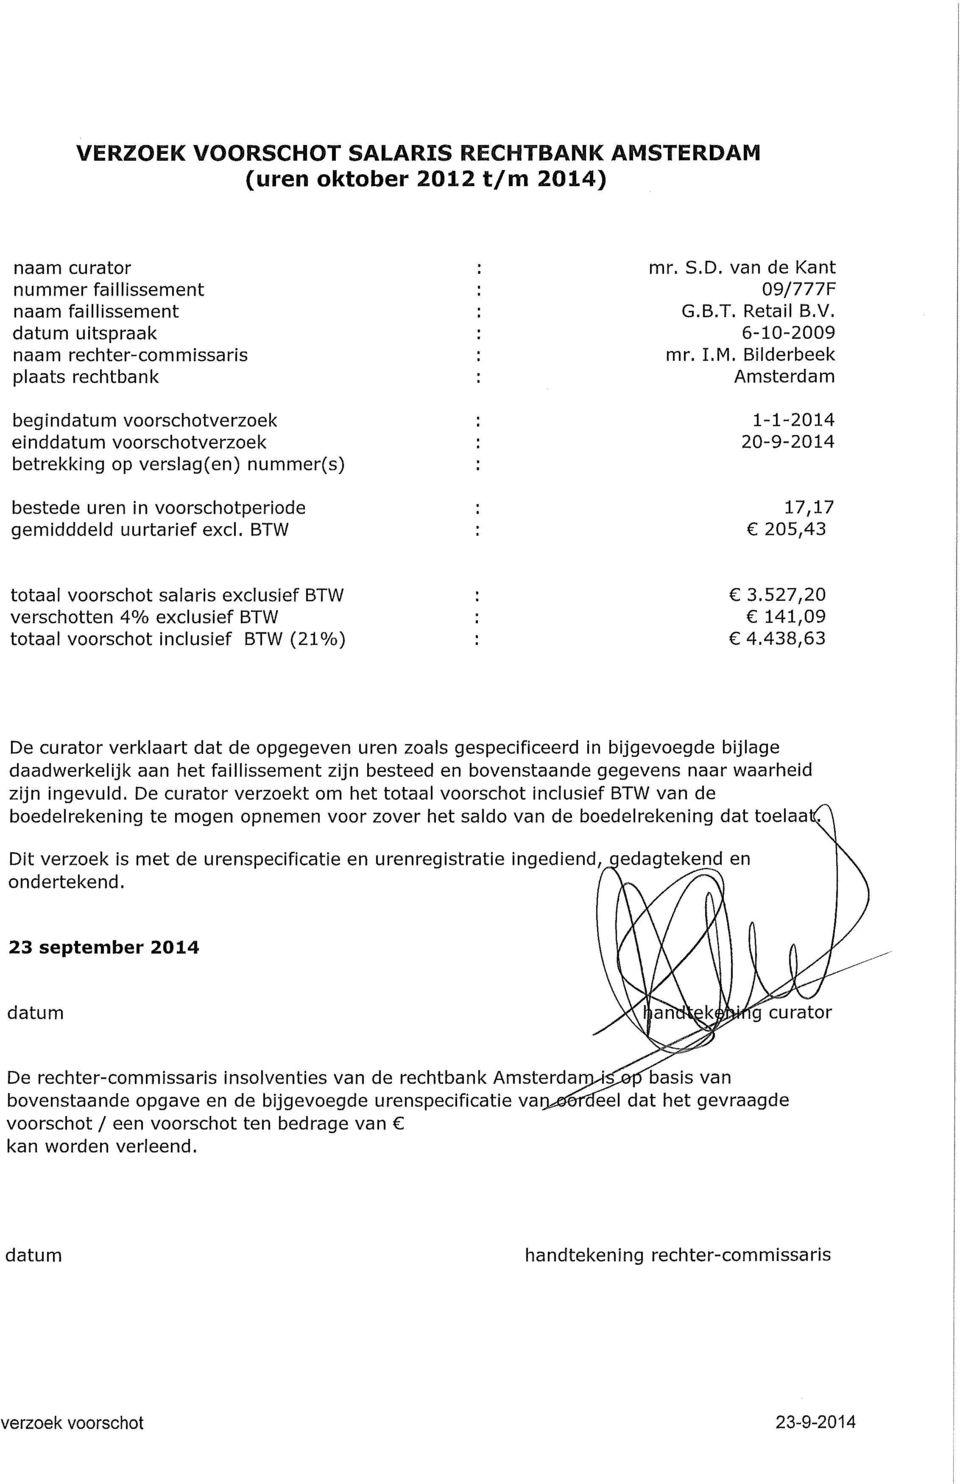 6-10-2009 mr. LM. Bilderbeek Amsterdam 1-1-2014 20-9-2014 17,17 205,43 totaal voorschot salaris exclusief BTW verschotten 4% exclusief BTW totaal voorschot inclusief BTW (21%) 3.527,20 141,09 4.